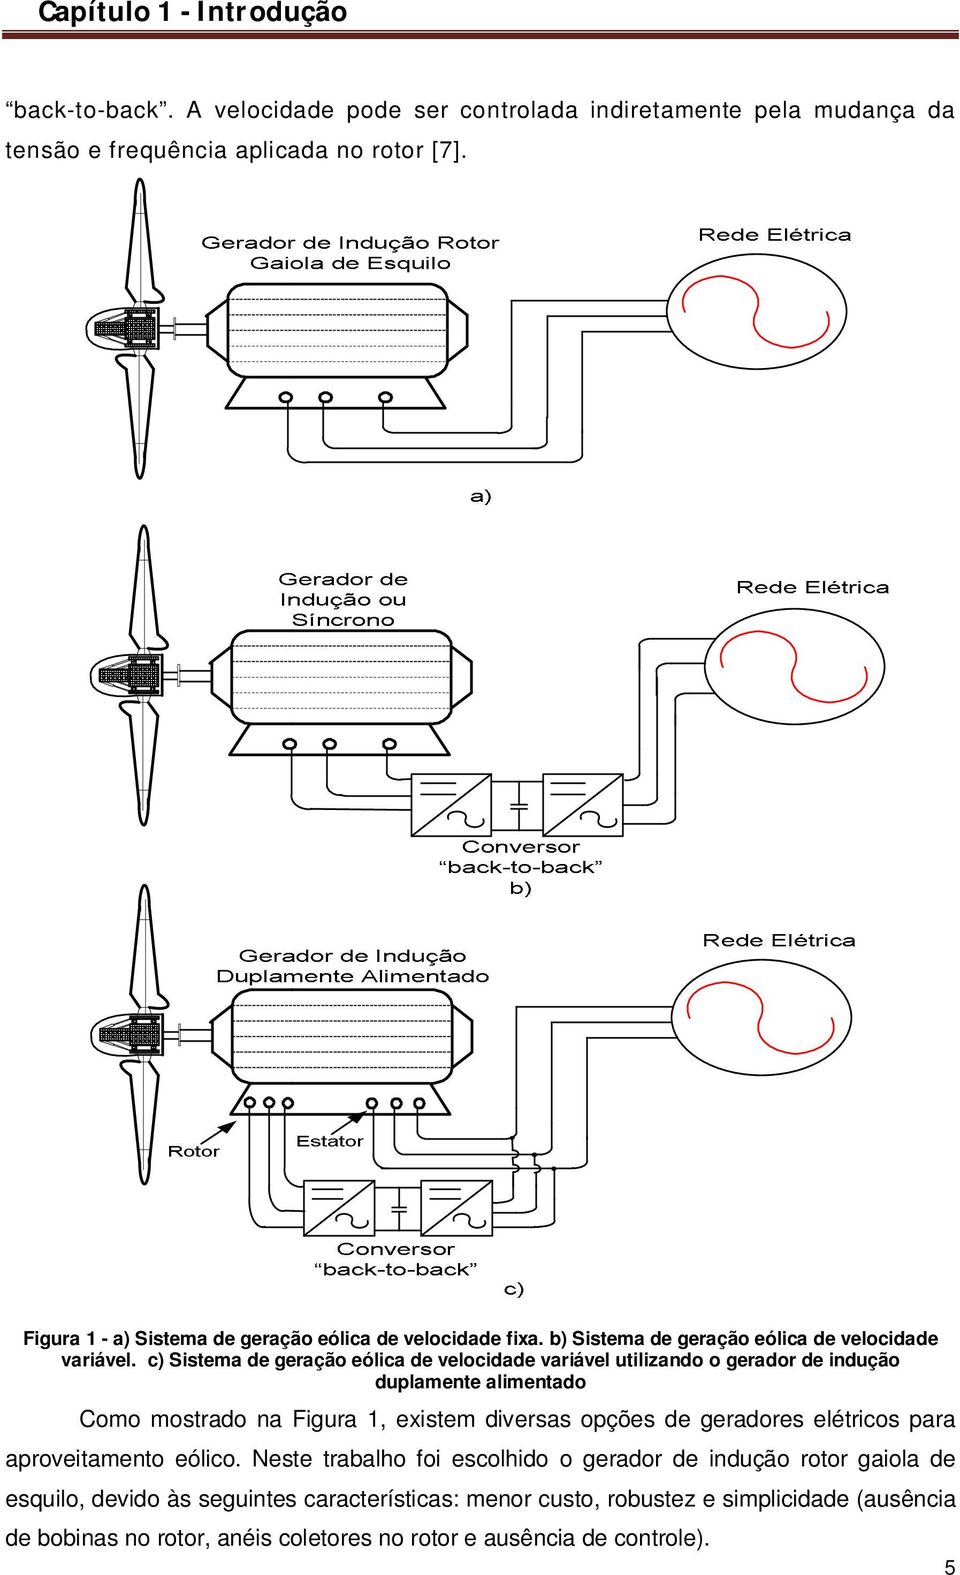 c) Sistema de geração eólica de velocidade variável utilizando o gerador de indução duplamente alimentado Como mostrado na Figura 1, existem diversas opções de geradores